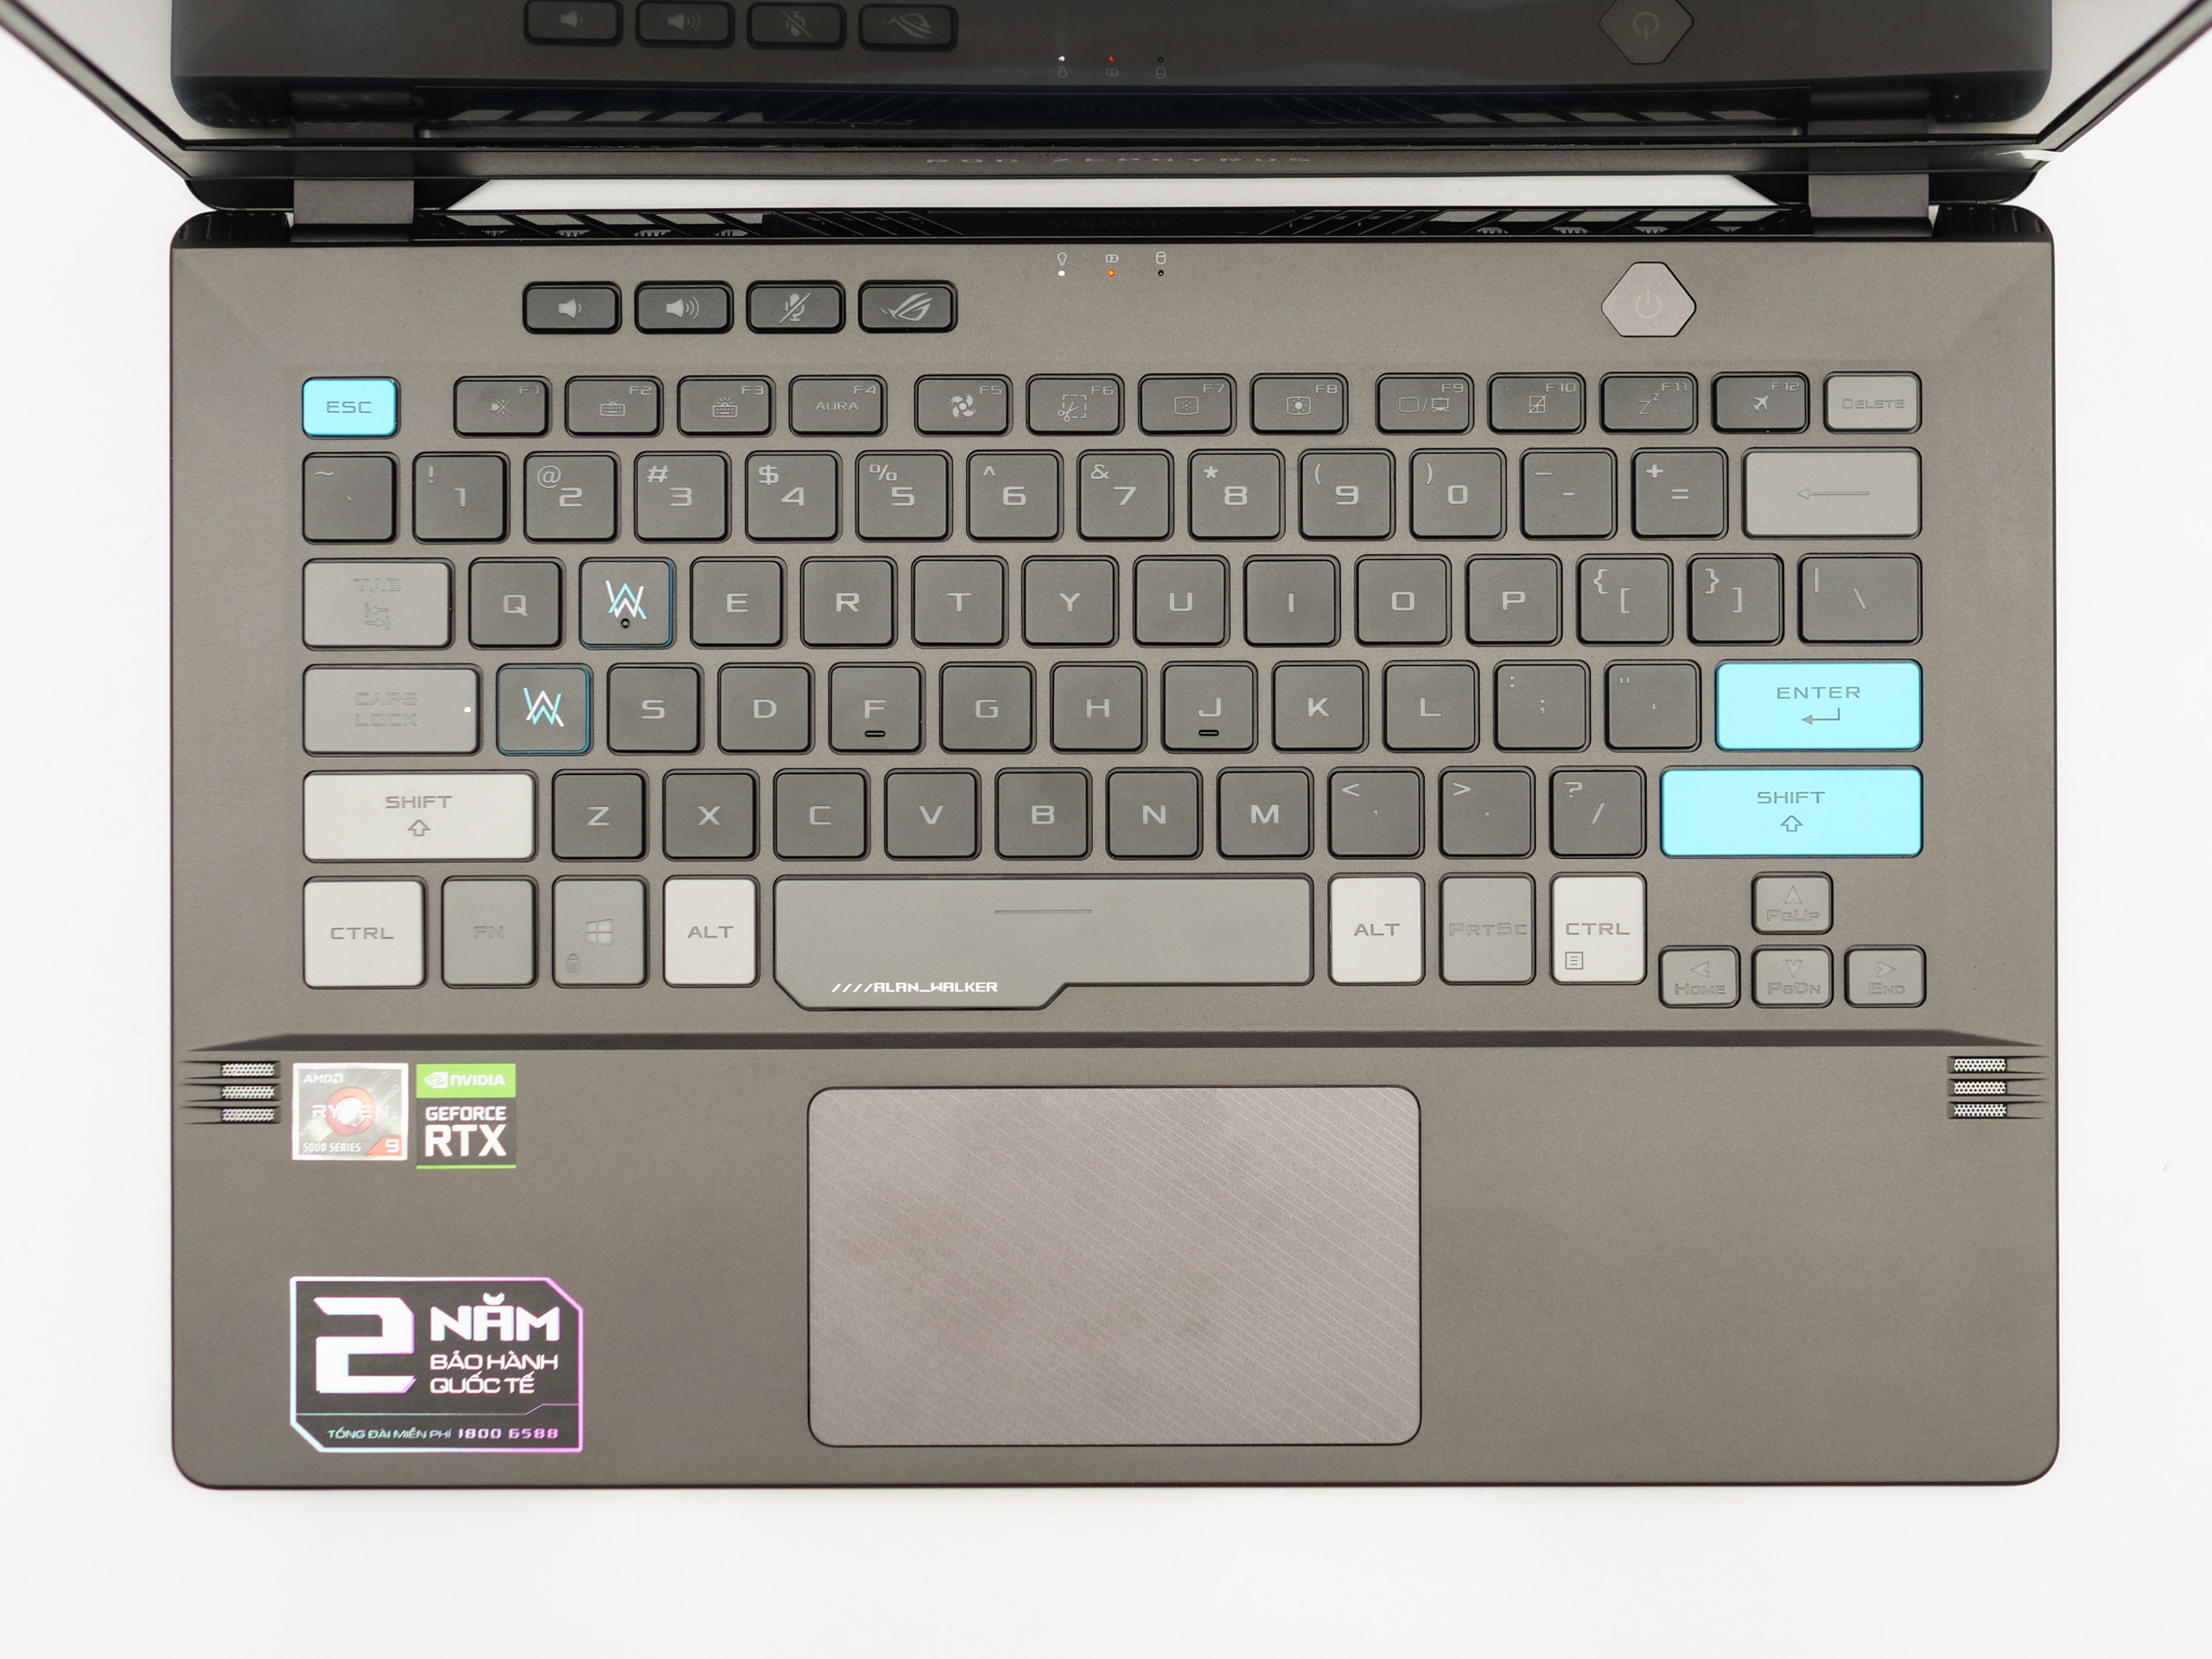 Trên tay laptop chơi game ASUS ROG Zephyrus G14 Alan Walker Edition: Vẻ ngoài cool ngầu, hiệu năng mạnh mẽ với kích thước nhỏ gọn